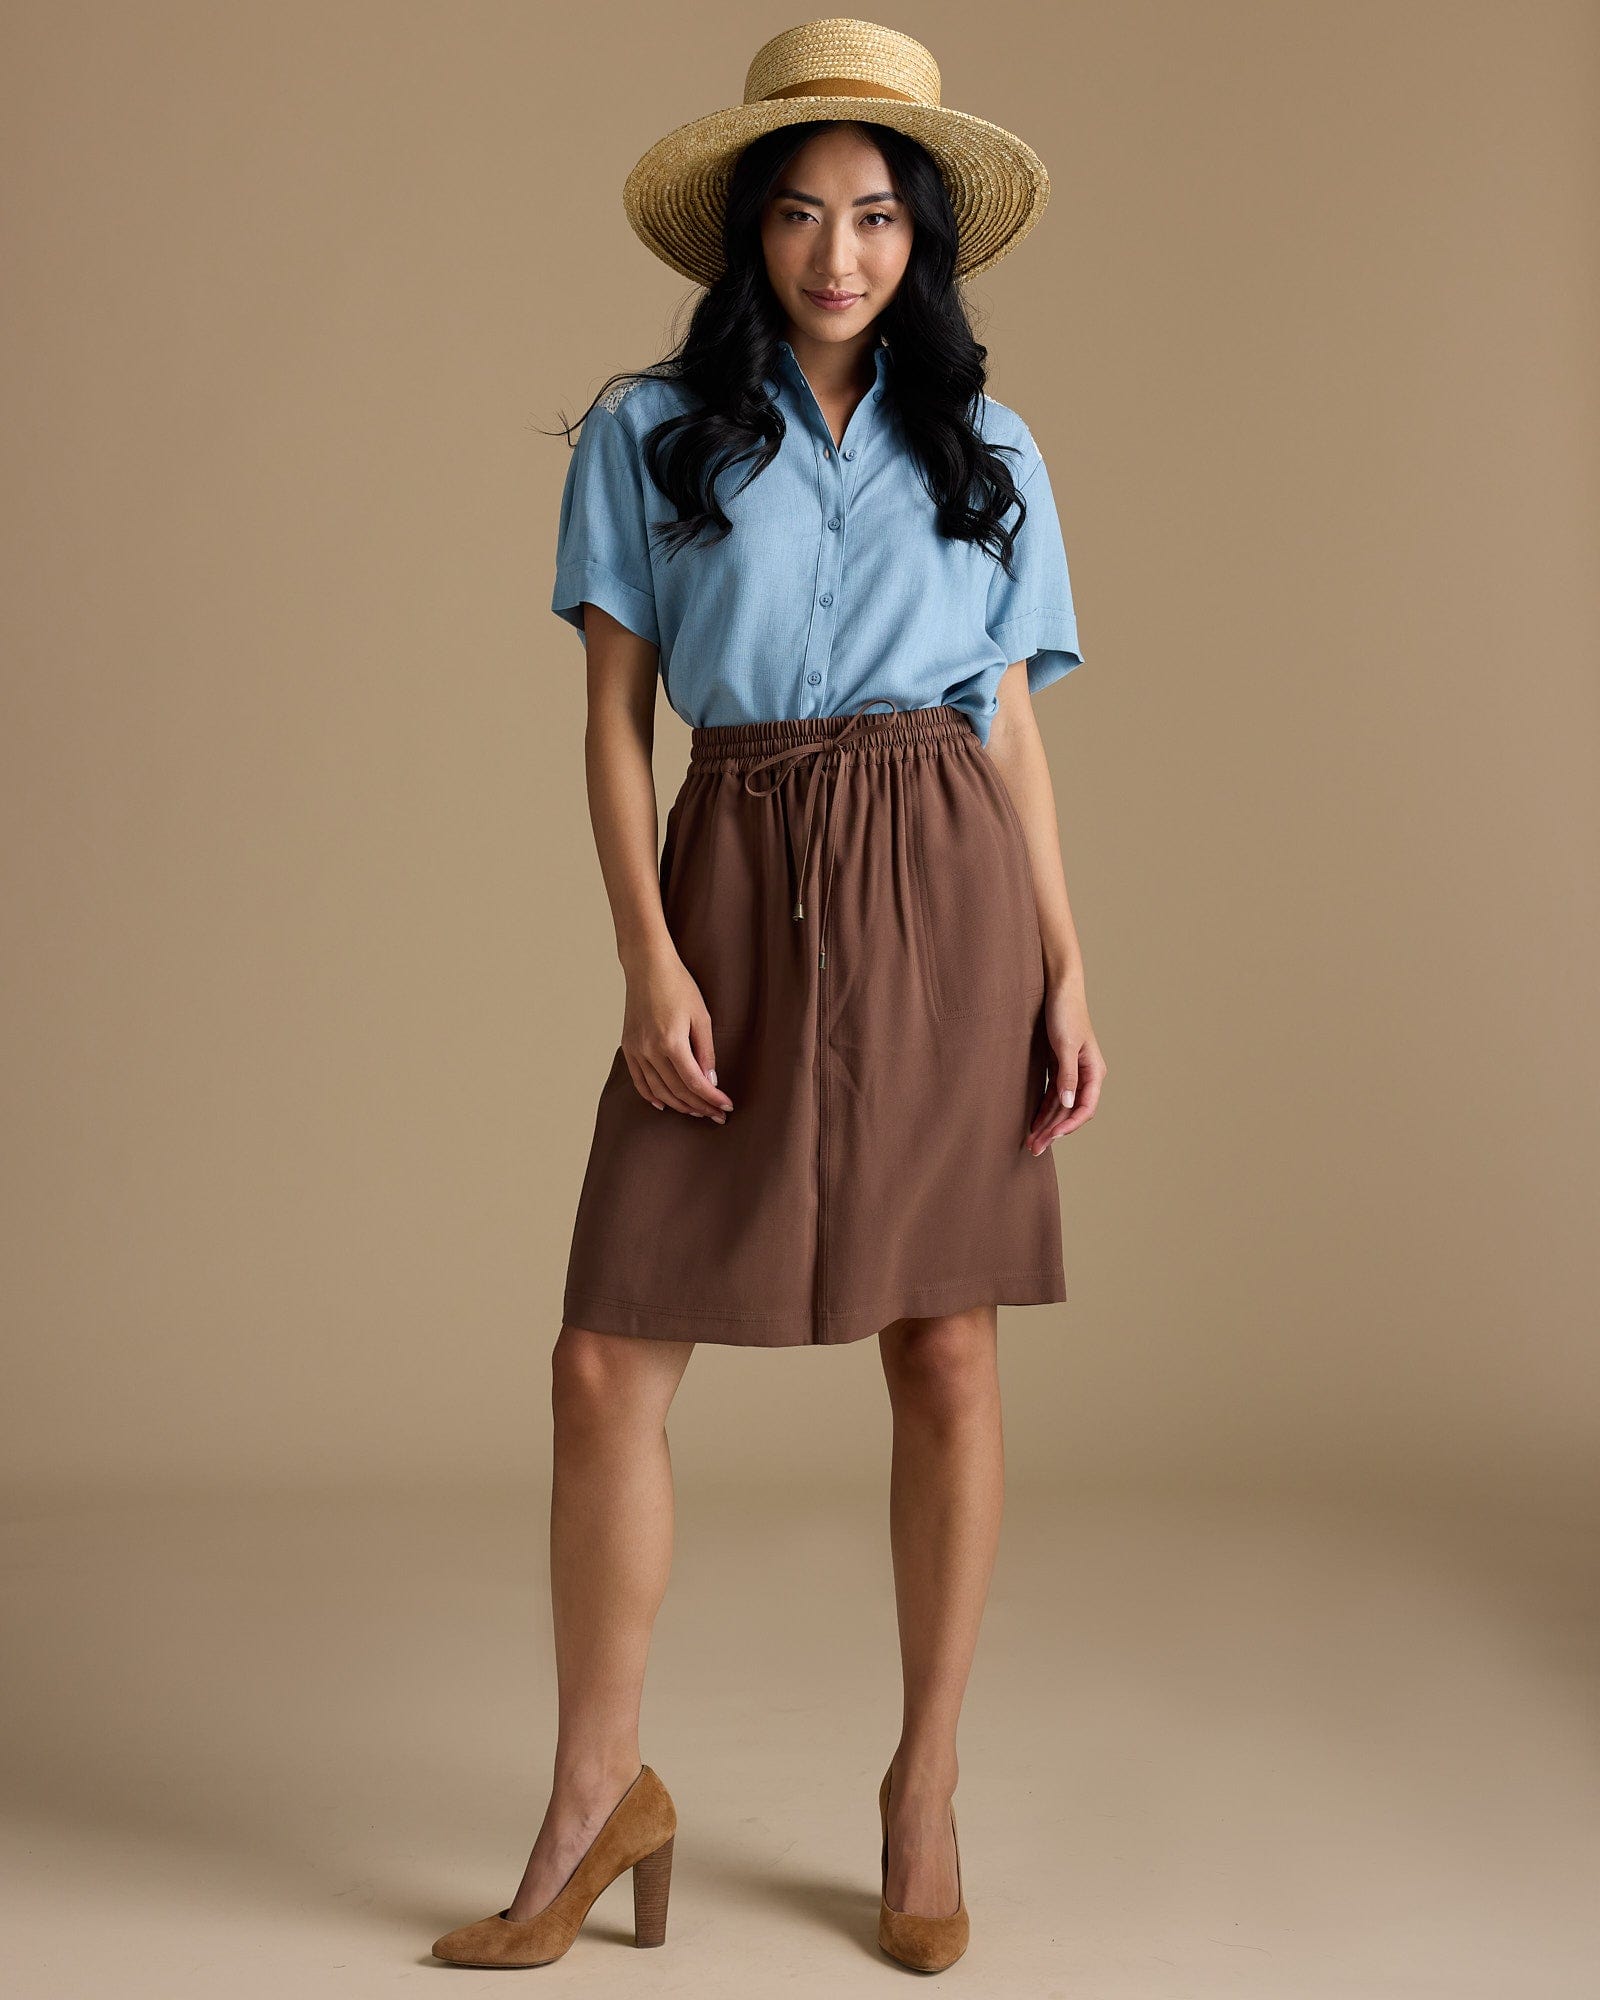 Woman in brown, knee-length skirt